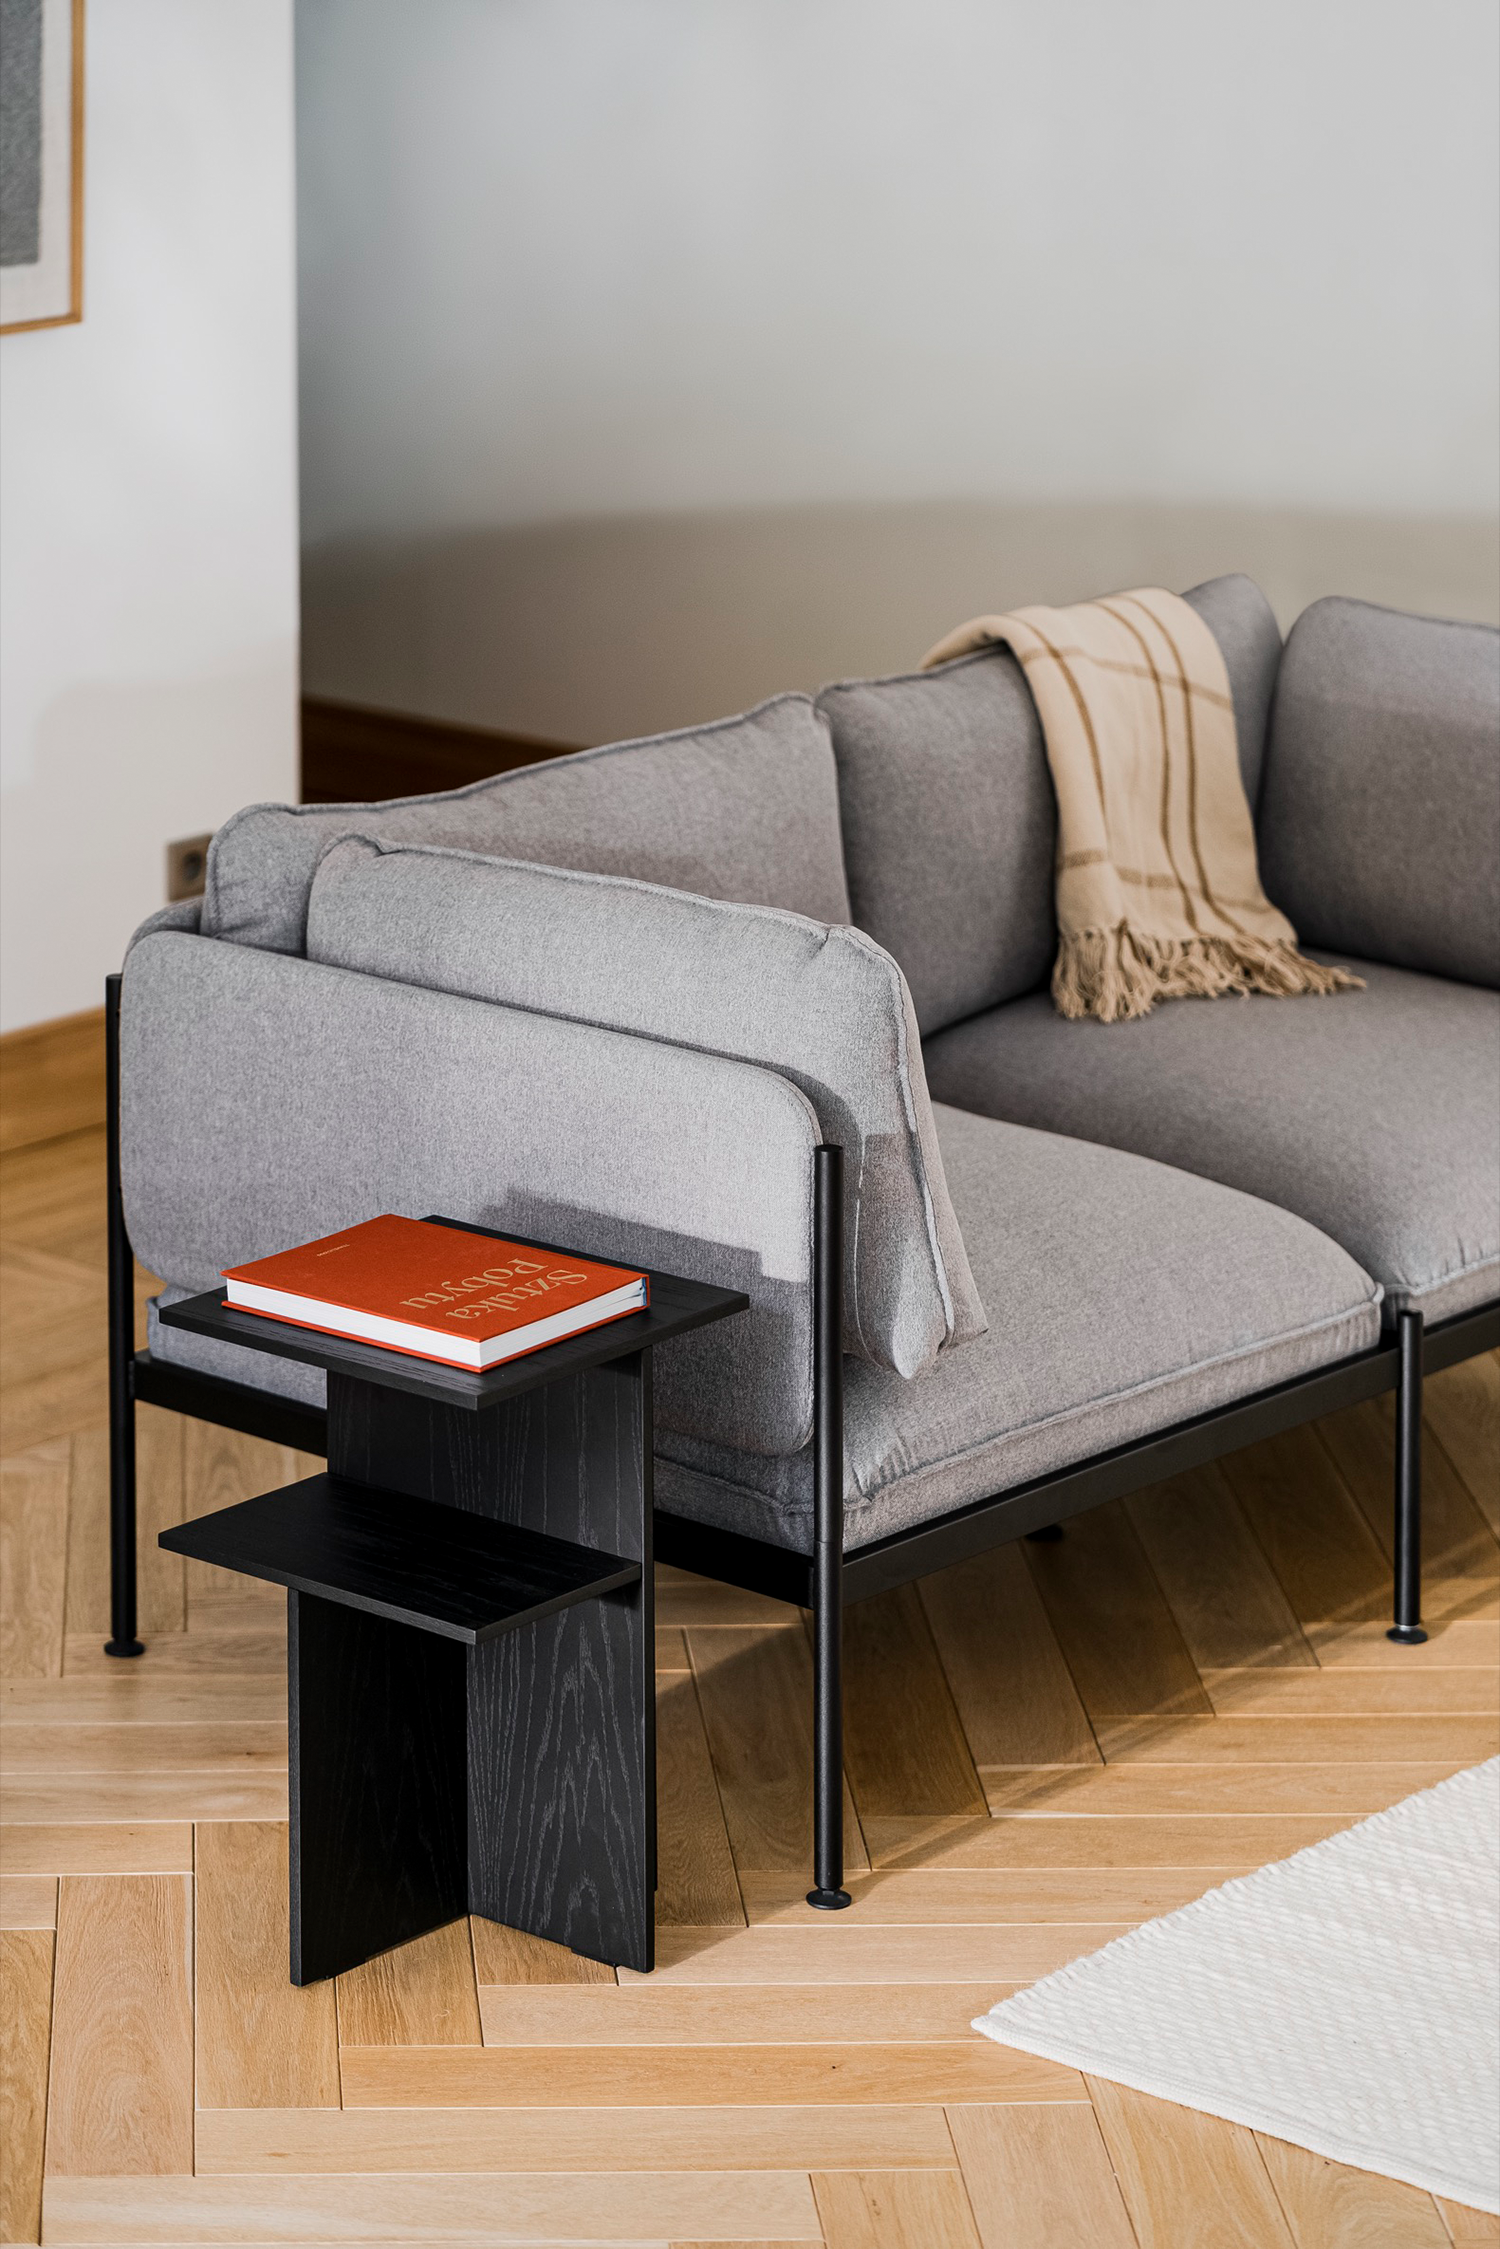 Toom Modular Sofa 2-Sitzer Konfiguration 3 in Pale Grey  präsentiert im Onlineshop von KAQTU Design AG. 2er Sofa ist von Noo.ma